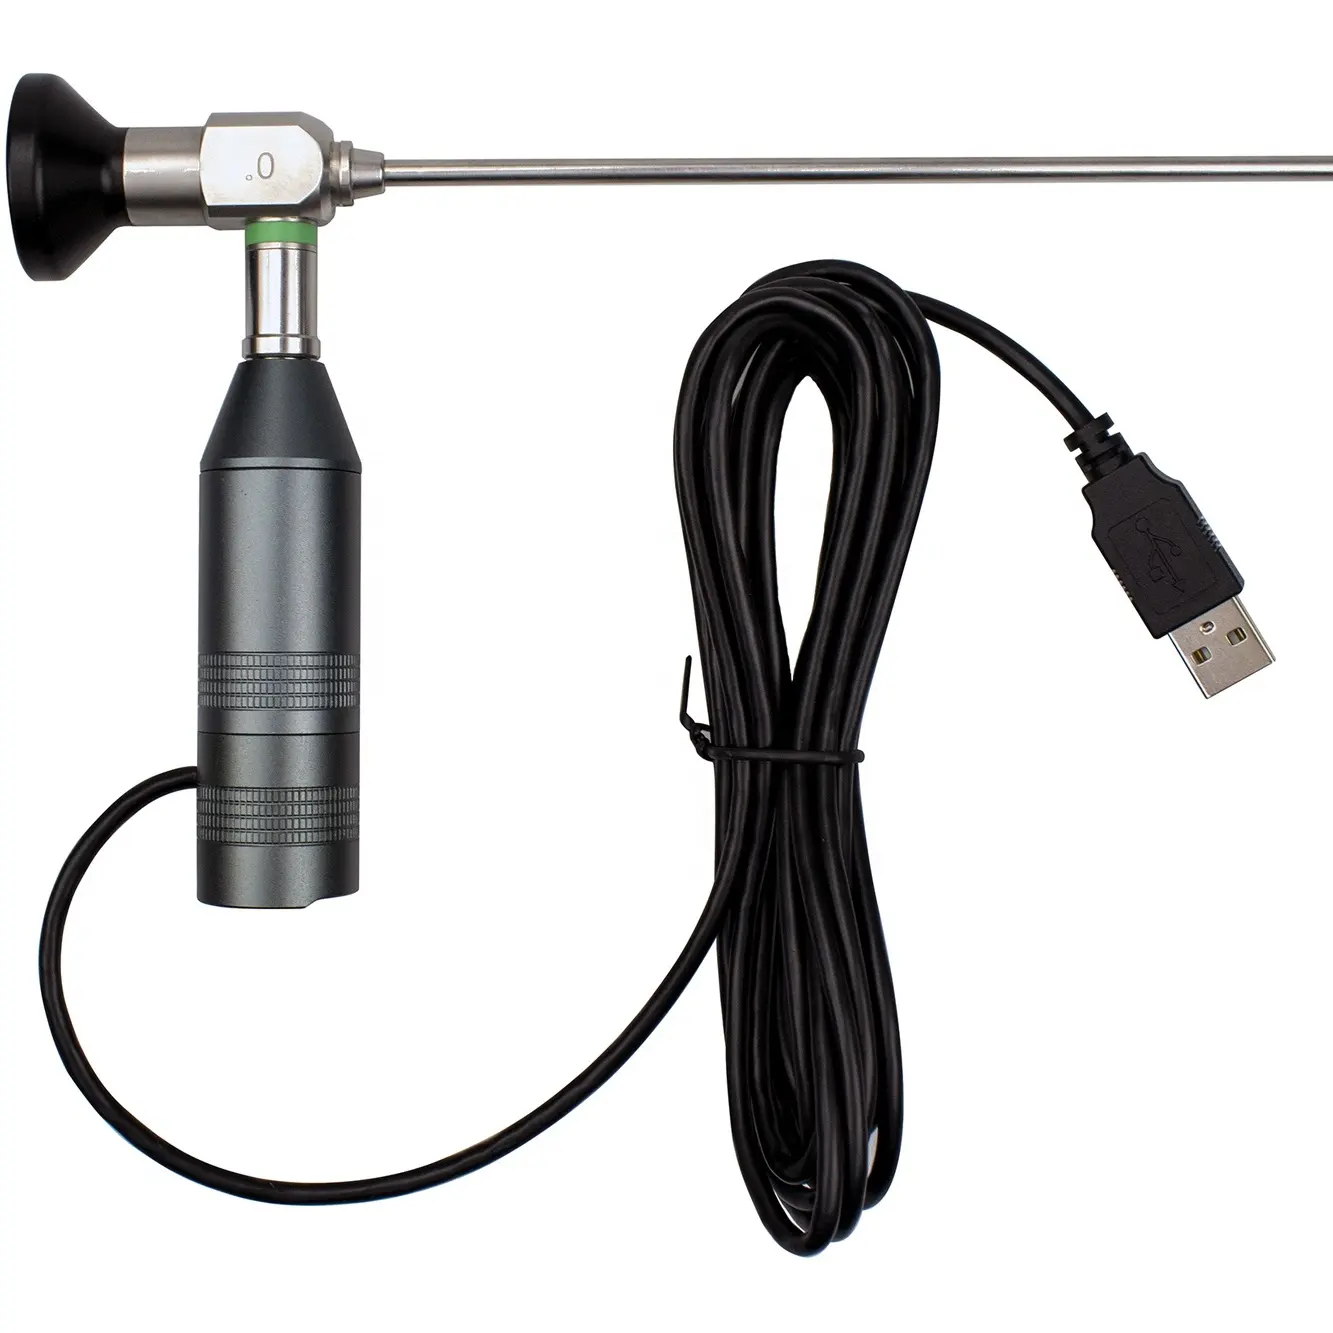 Tragbares medizinisches Mini-USB-Endoskop 10-W-Kaltlichtquelle für das HNO-Untersuchung endoskop kamerasystem